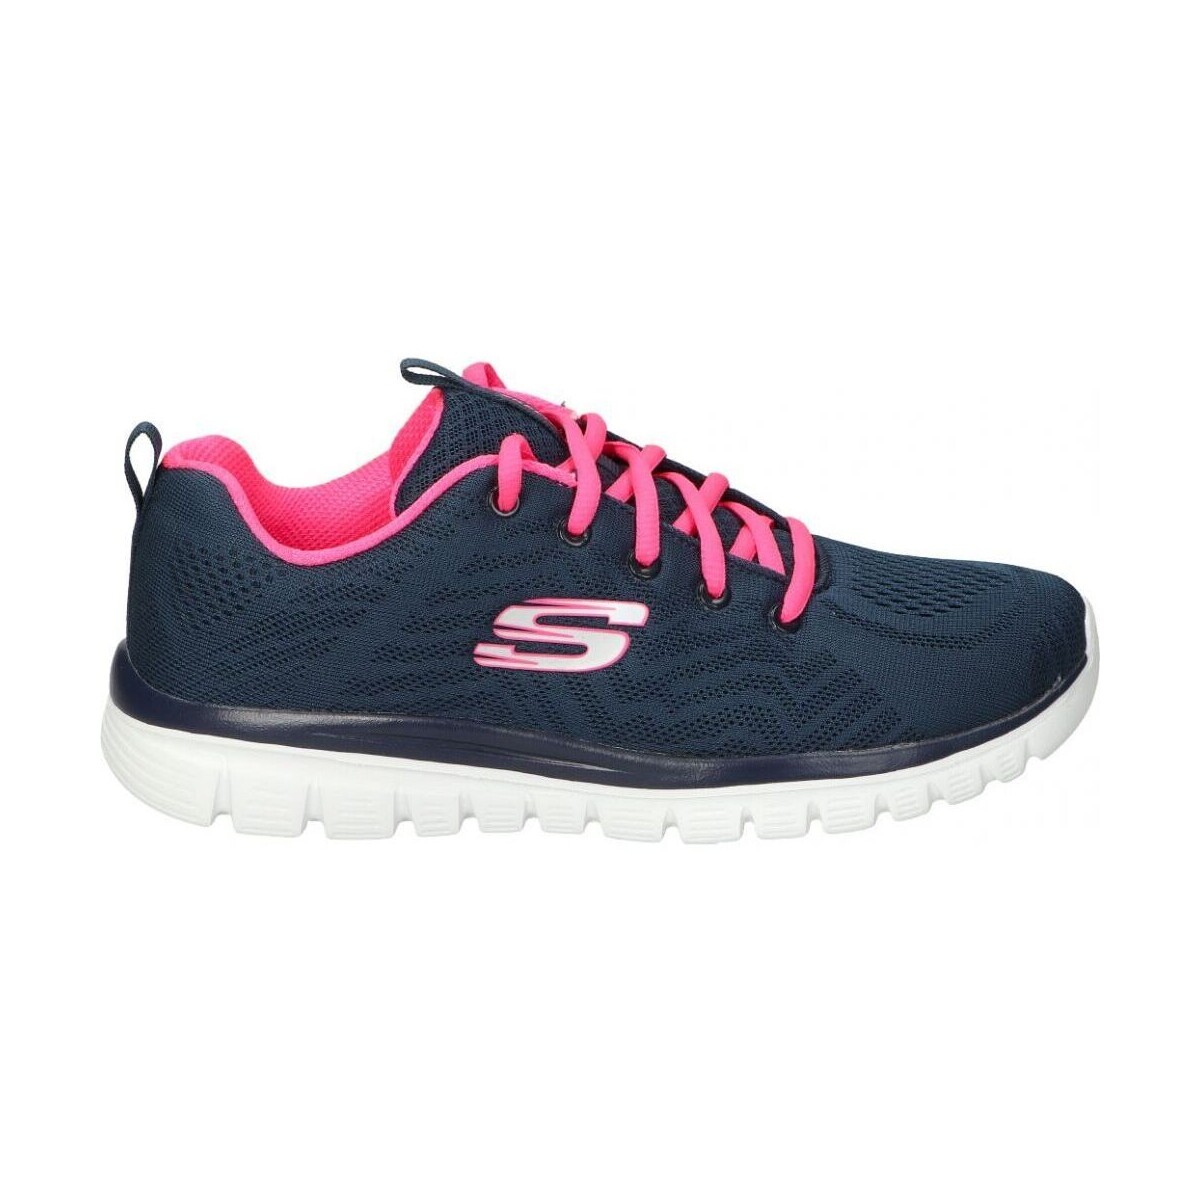 Boty Ženy Multifunkční sportovní obuv Skechers 12615W-NVHP Modrá